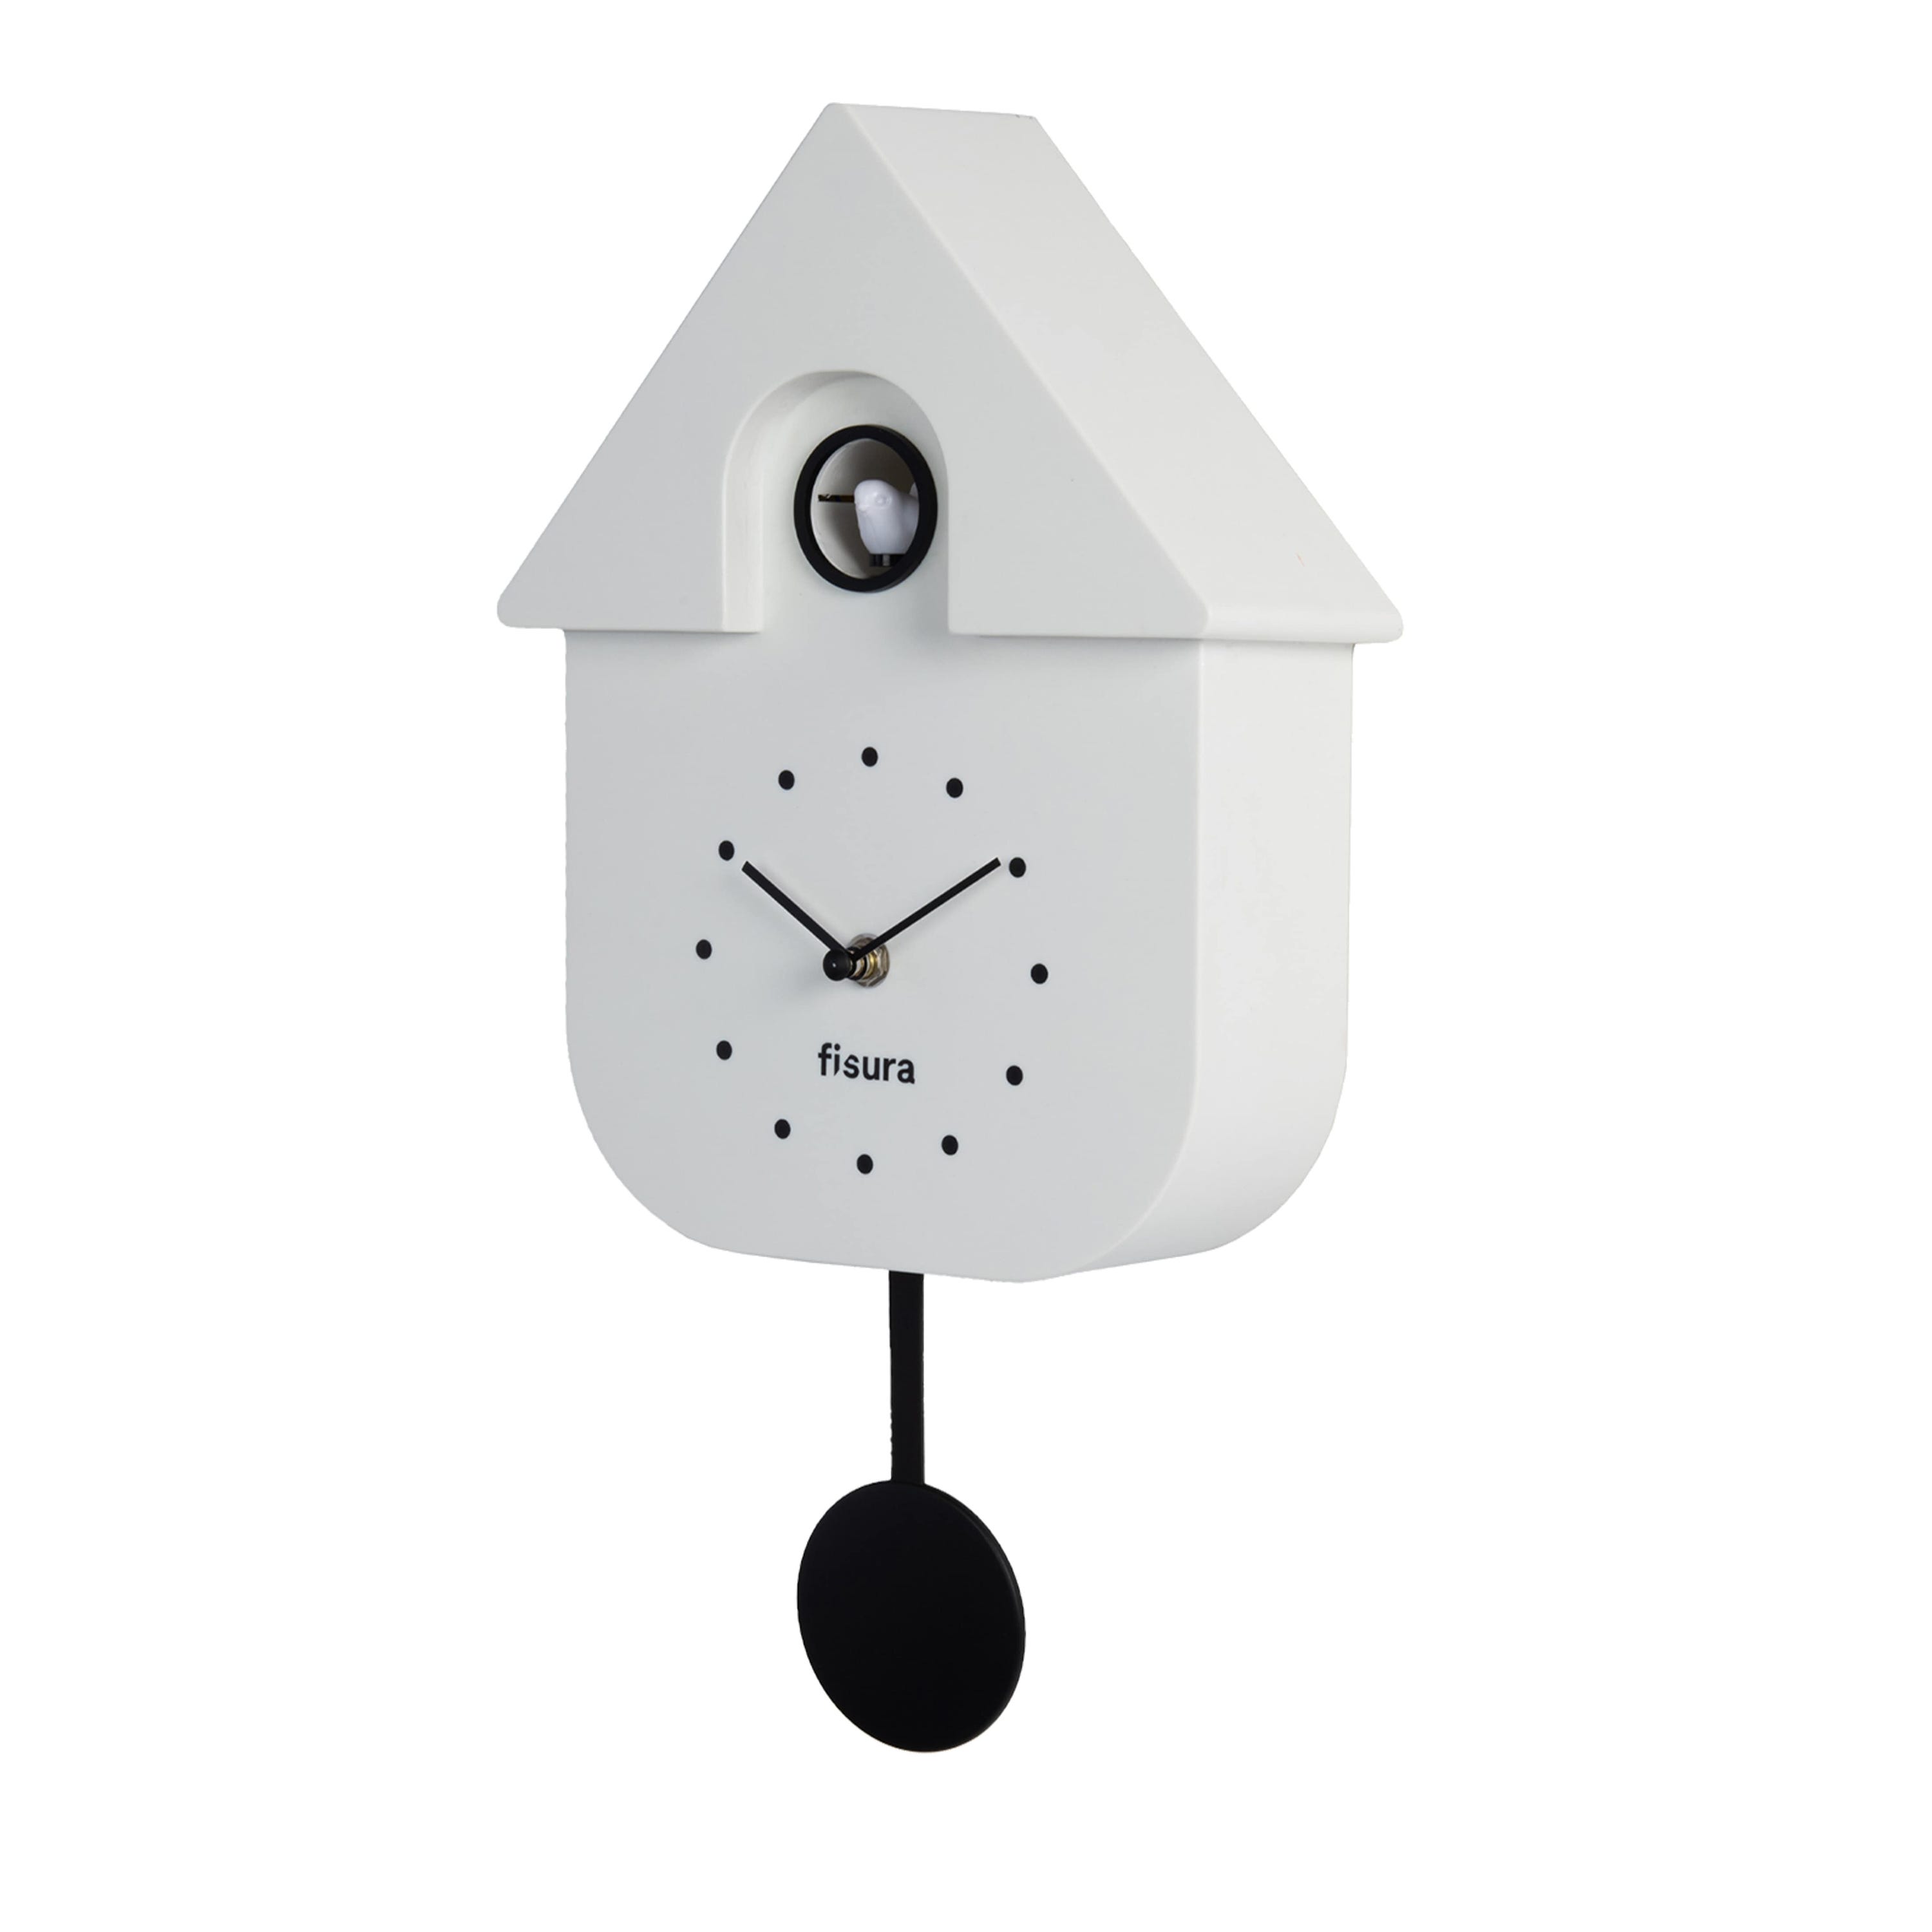 Fisura - Reloj de cuco blanco y dial negro. Reloj pared original para  regalo. 3 Pilas AA no incluidas. Medidas: 21,5 x 8 x 41,5. Plástico ABS.